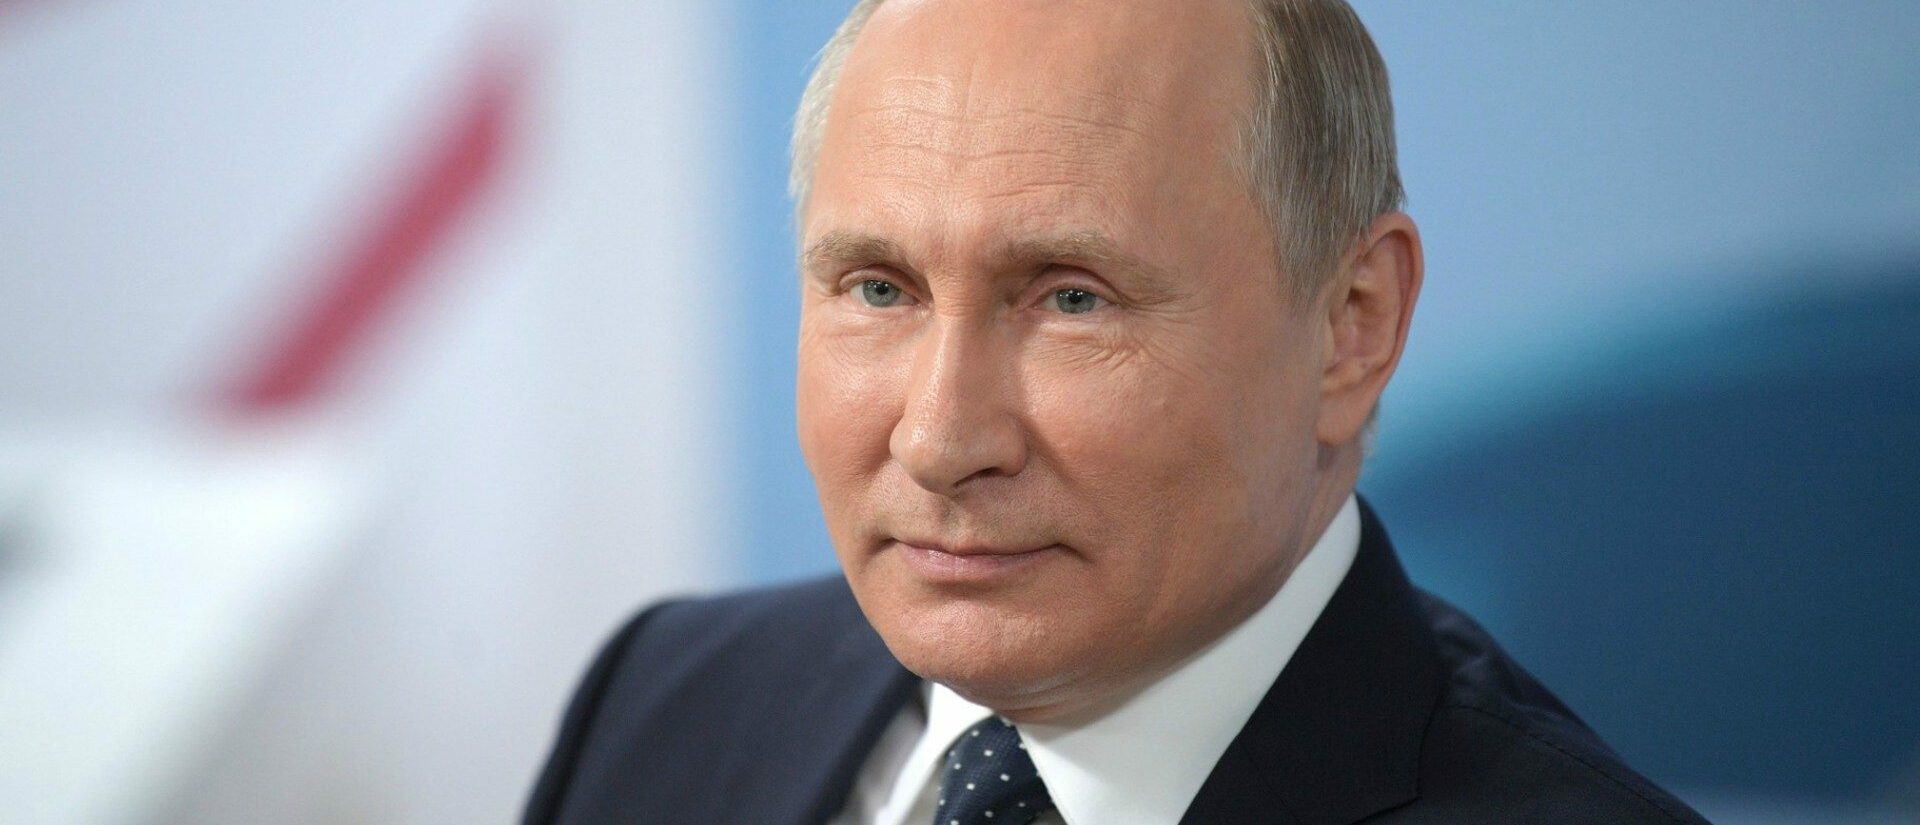 Le président Vladimir Poutine veut intégrer des changements dans la Constitution  | © Russian Federation/Wikimedia/CC BY 4.0